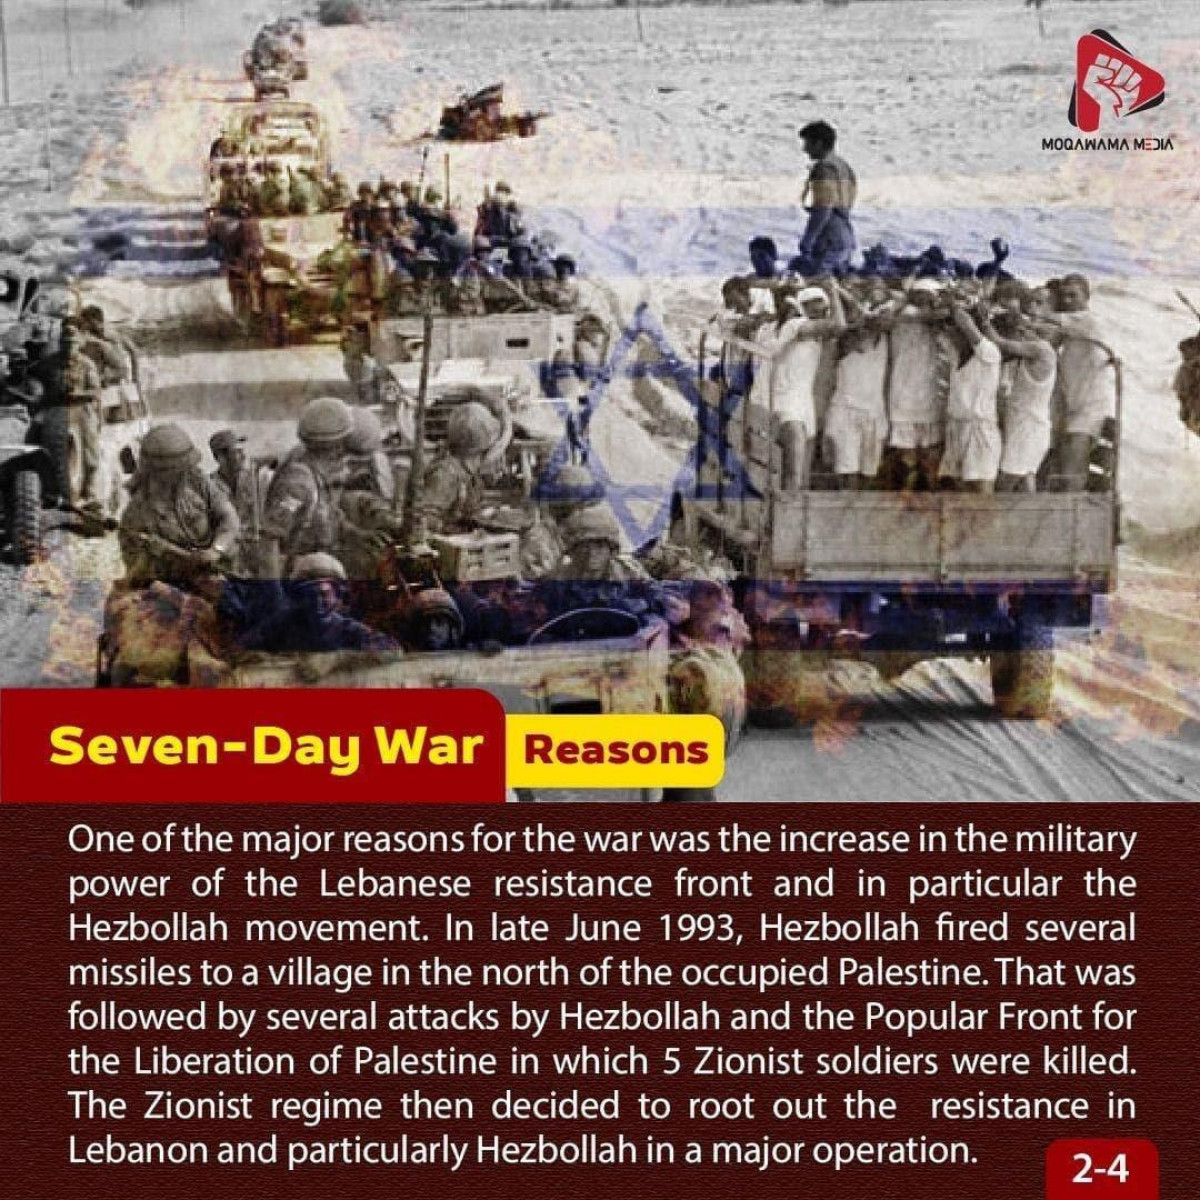 The 7-day war 2